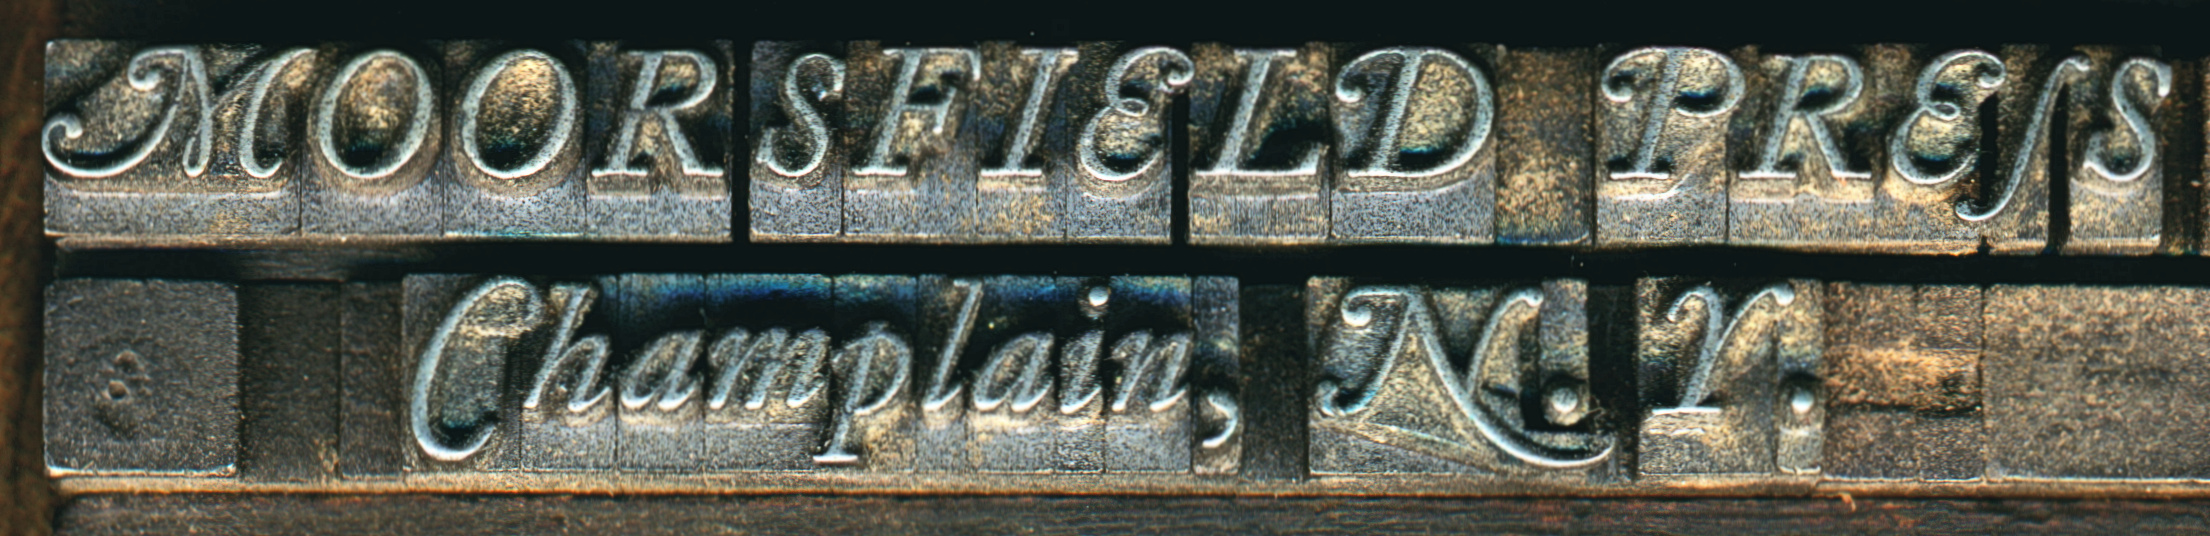 moorsfield press name typeset